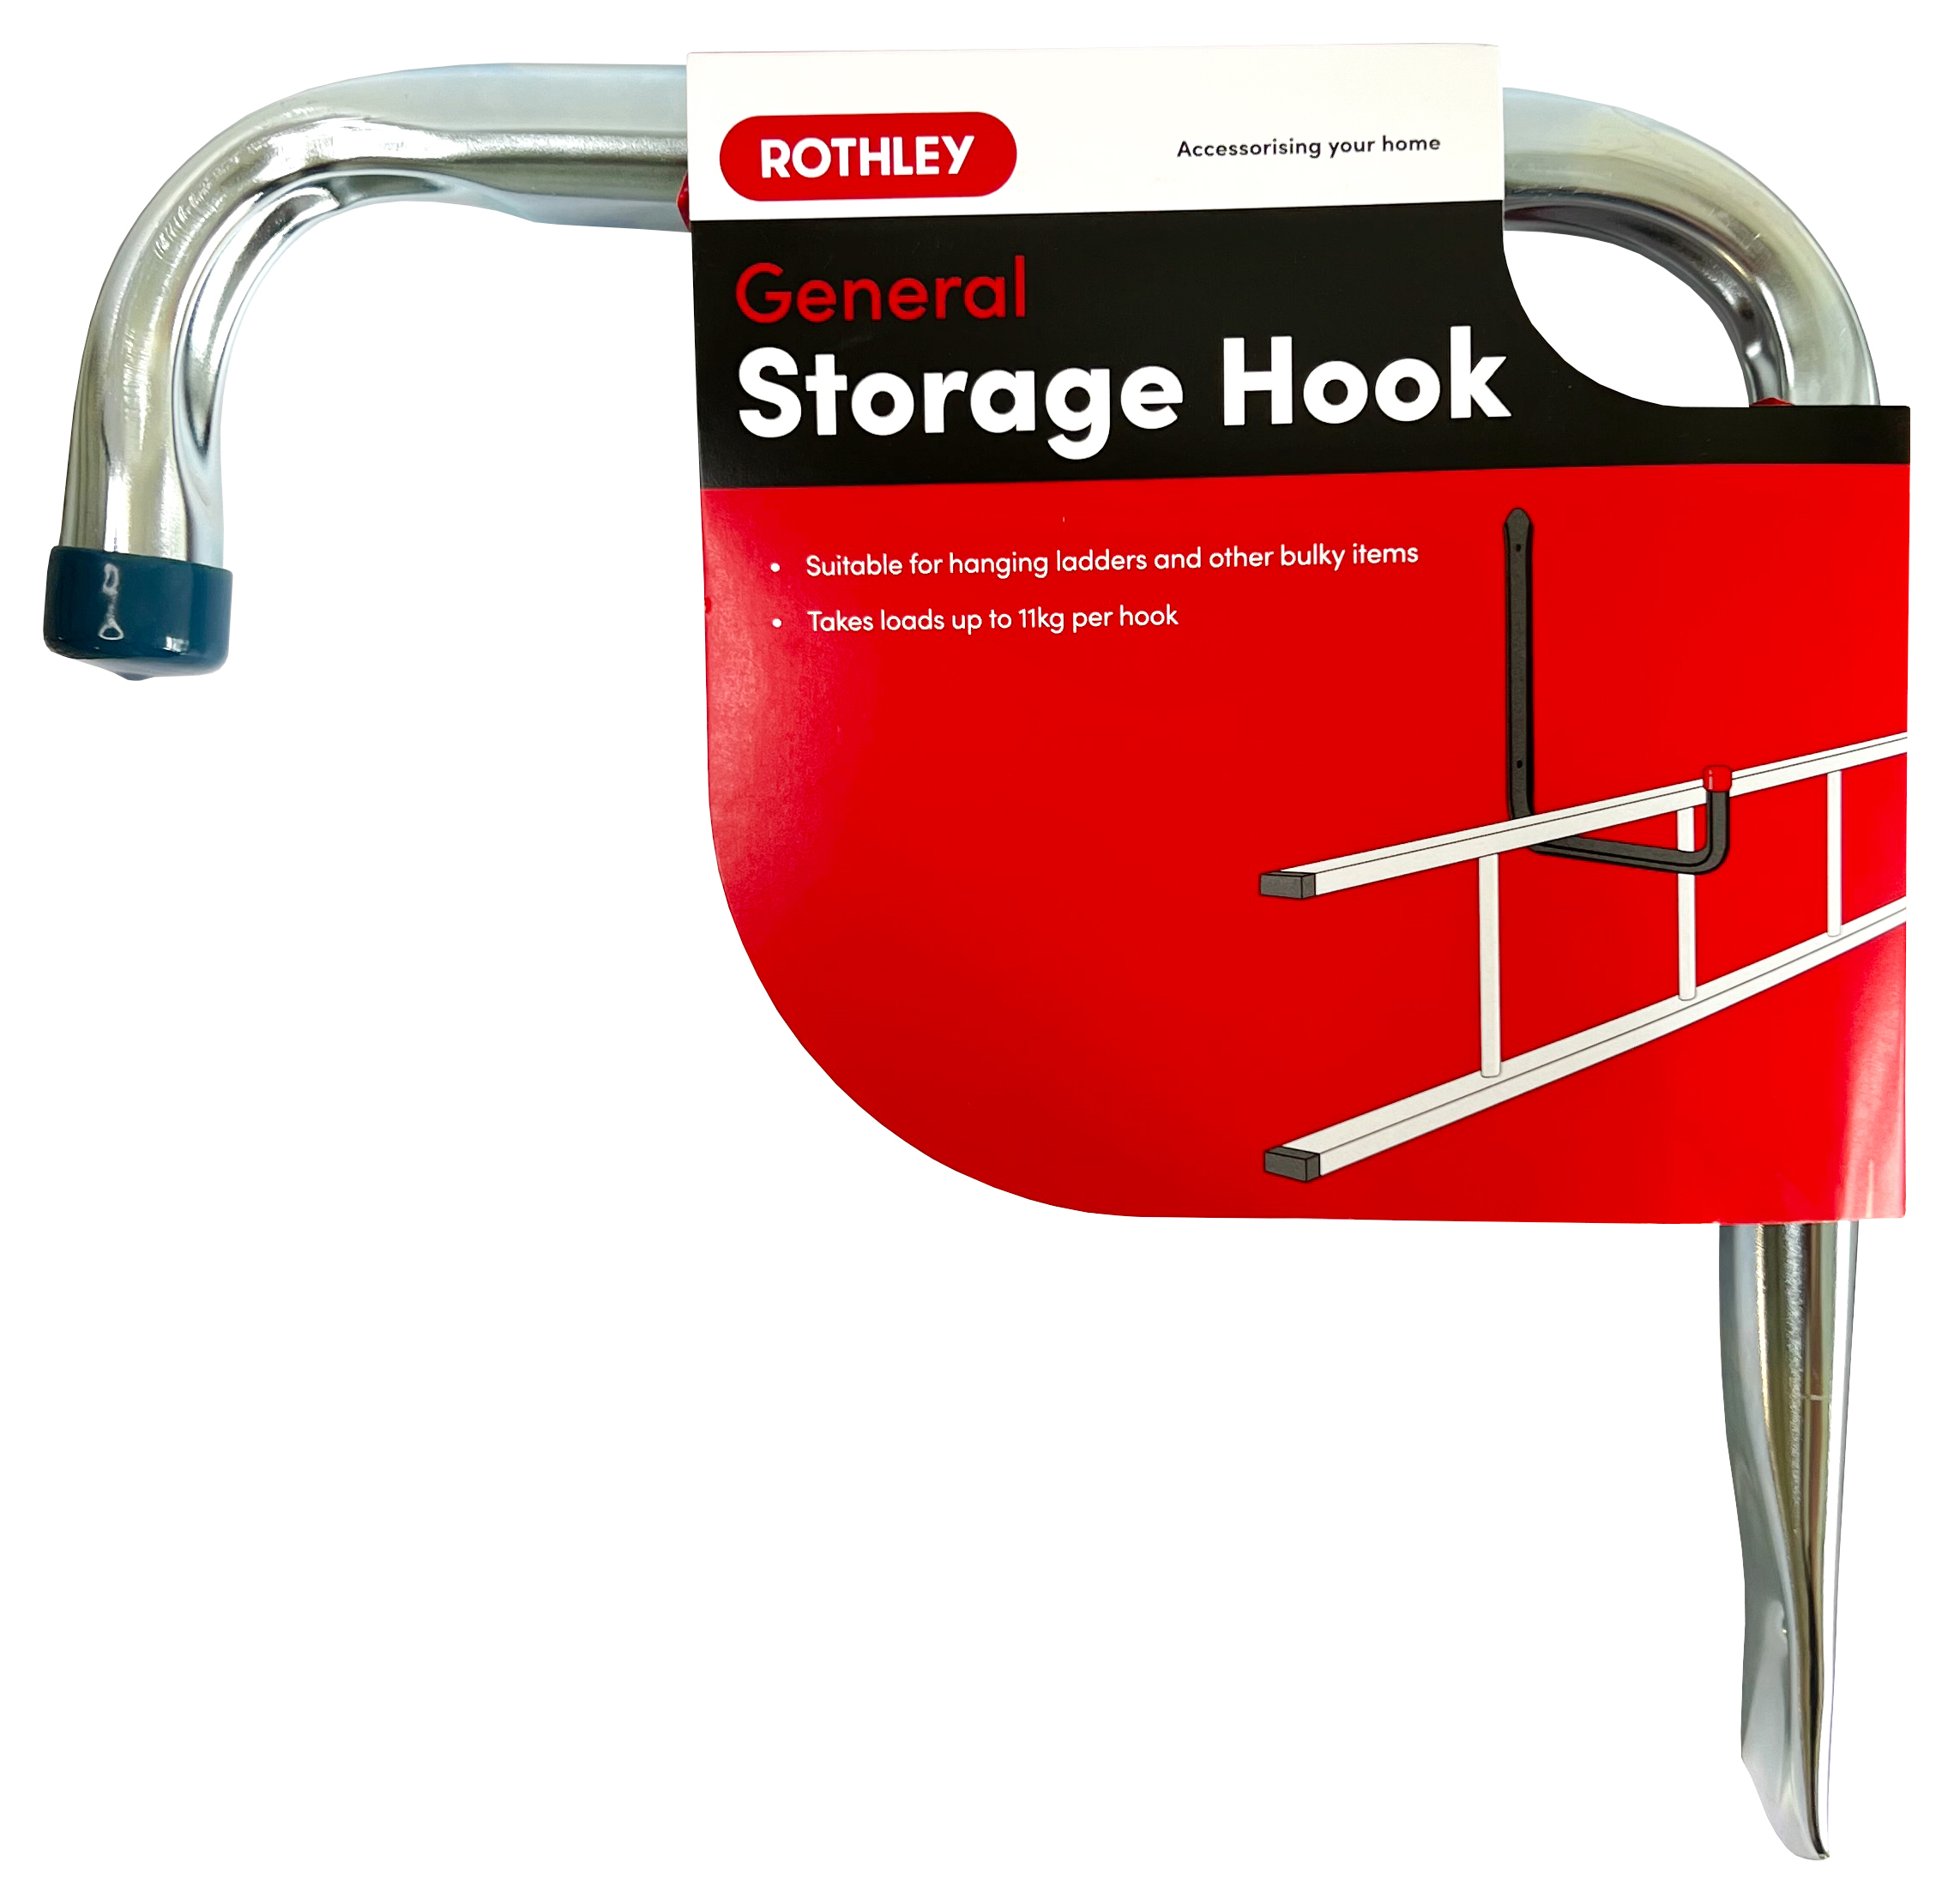 Image of Rothley General Storage Hook